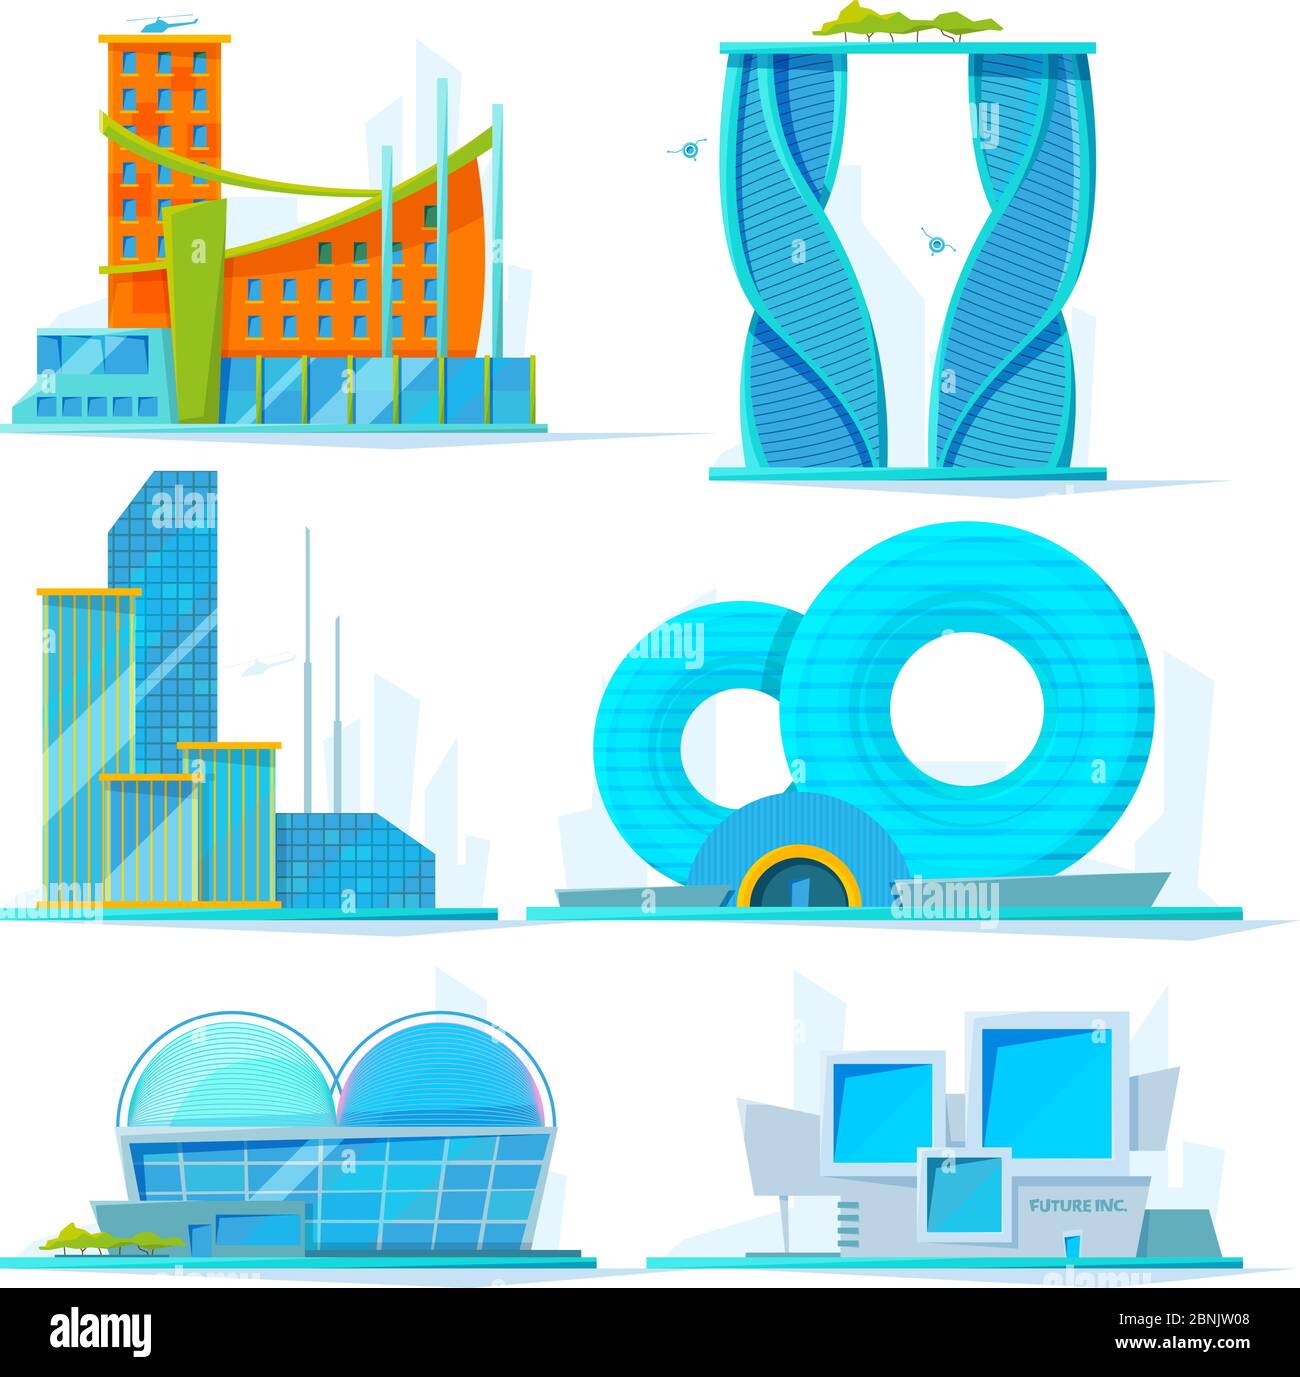 Ensemble de bâtiments futuristes. Images vectorielles plates de divers bâtiments stylisés Illustration de Vecteur